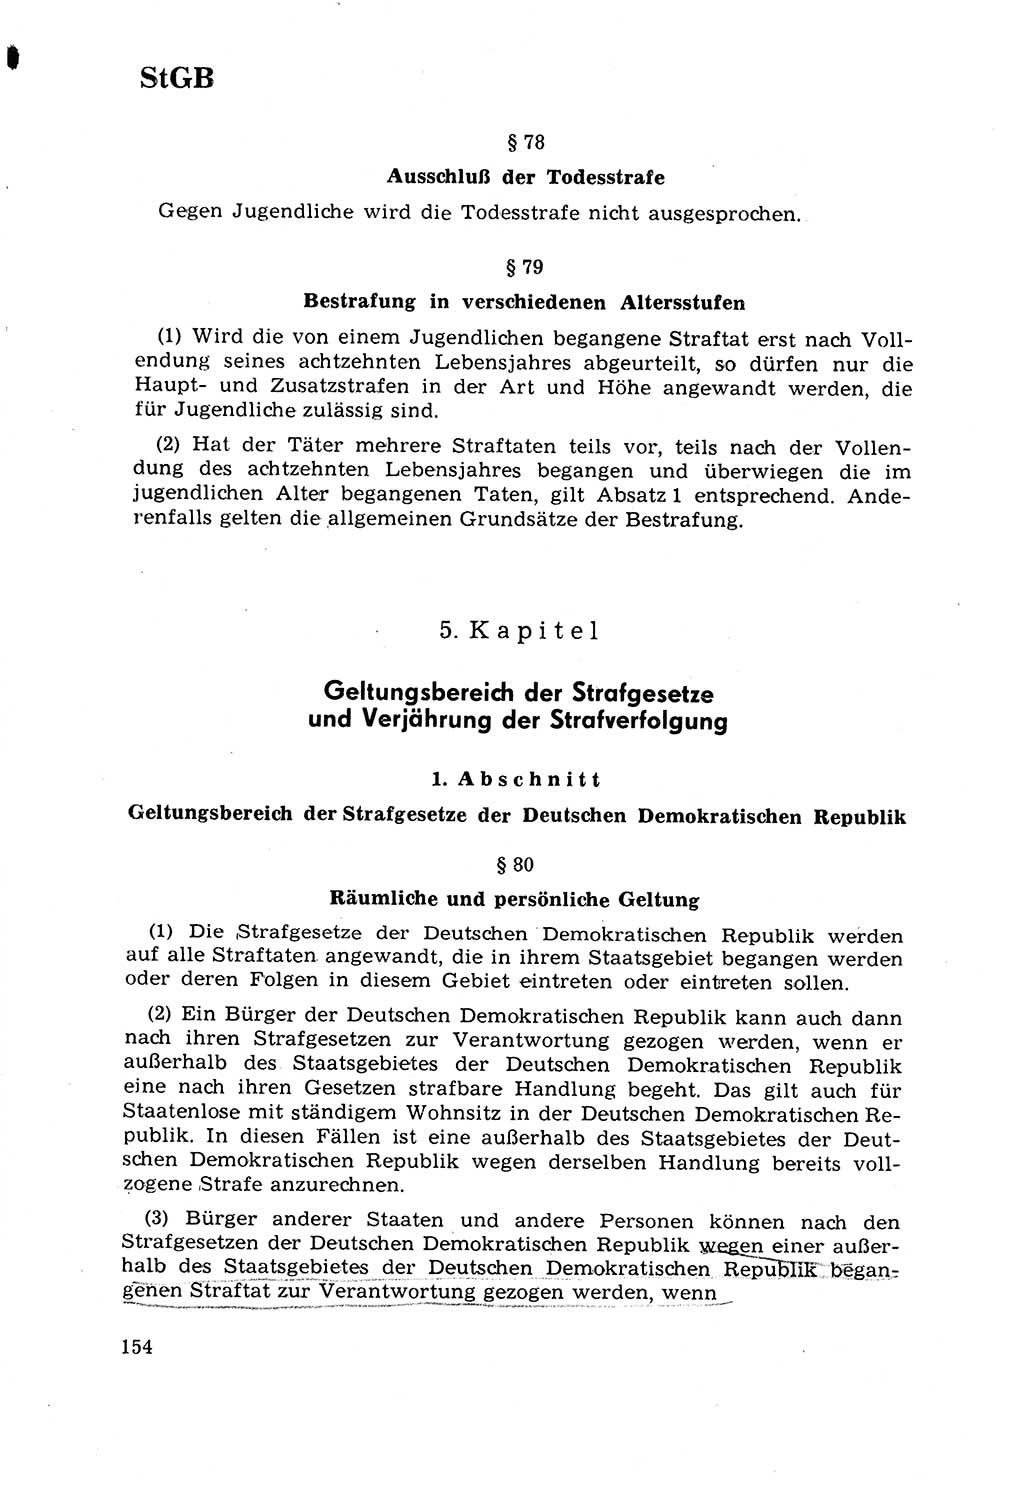 Strafrecht [Deutsche Demokratische Republik (DDR)] 1968, Seite 154 (Strafr. DDR 1968, S. 154)